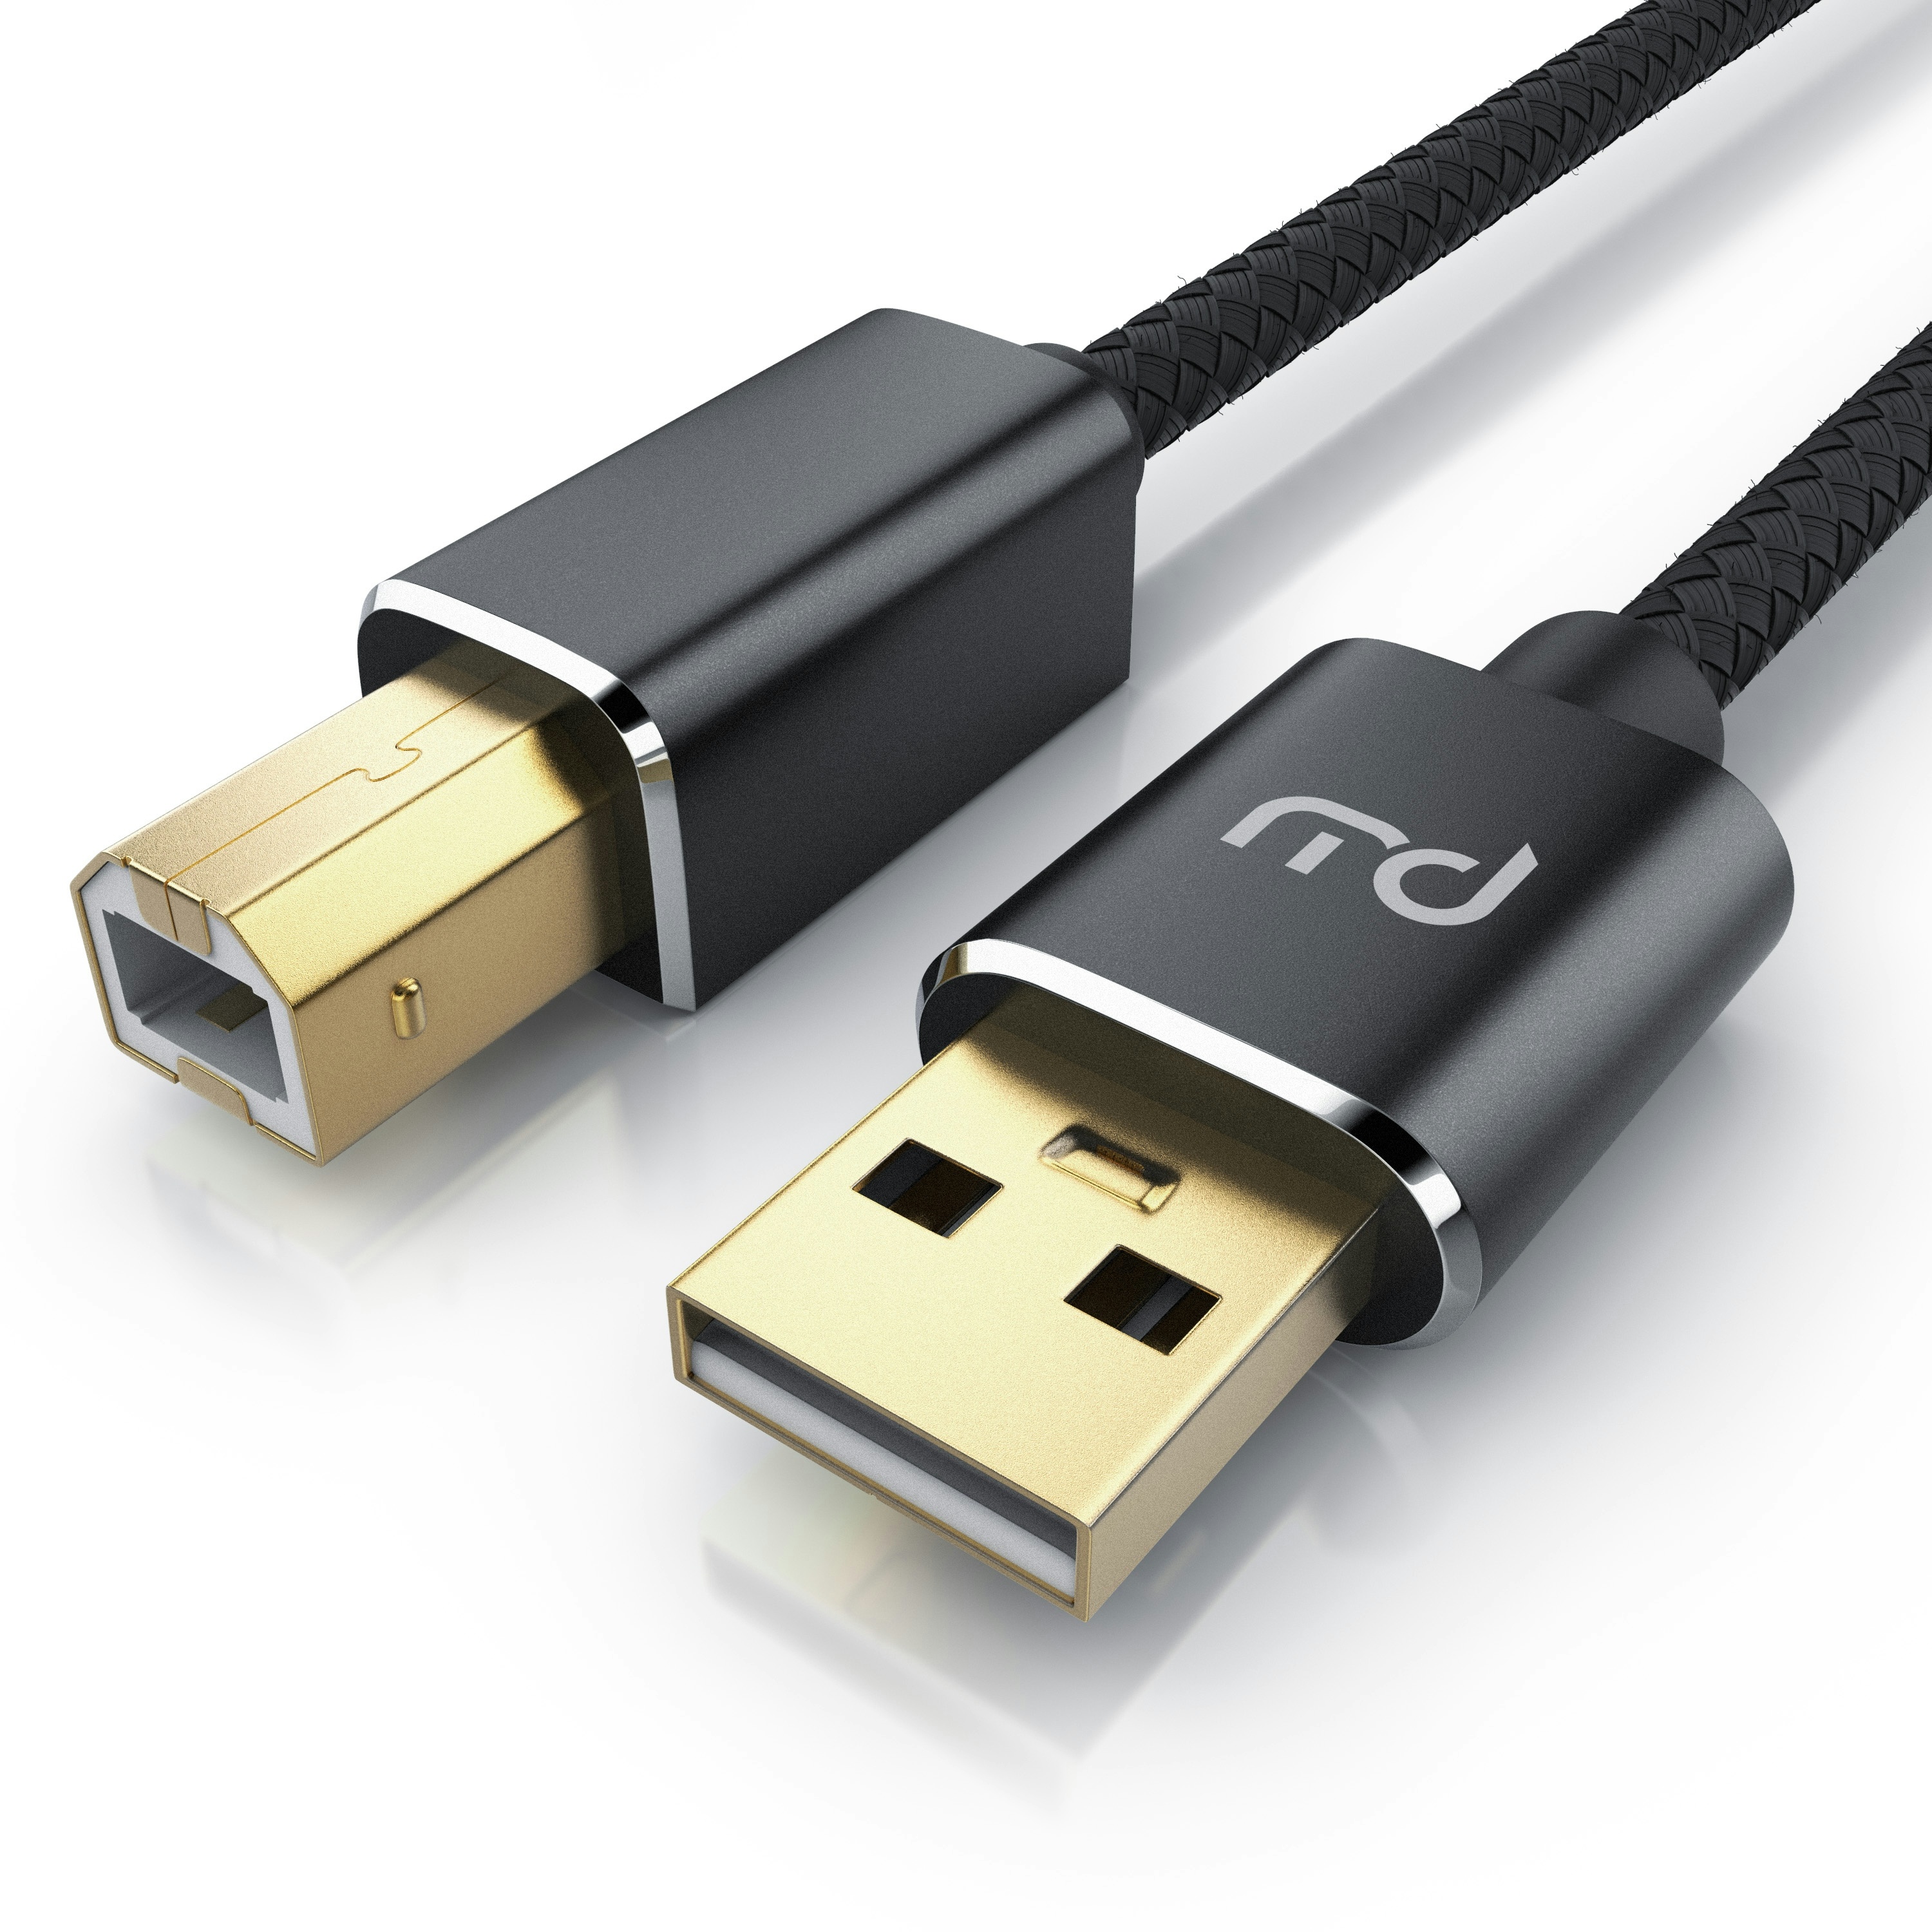 Primewire USB 2.0 Drucker / Scanner Kabel mit Nylonmantel - 3m